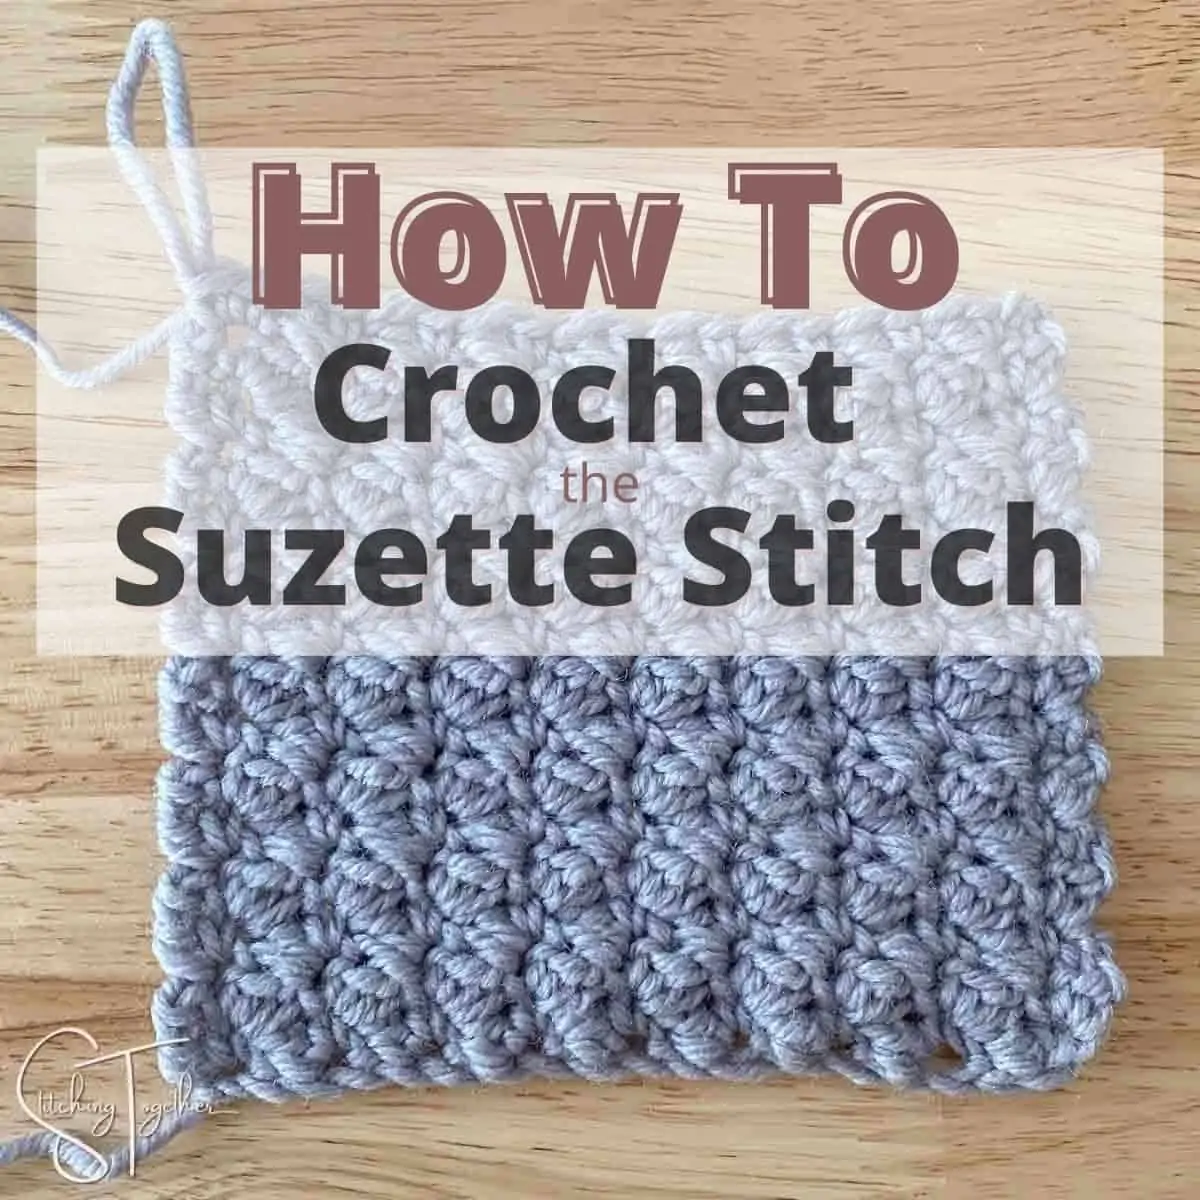 Suzette Stitch Crochet Tutorial